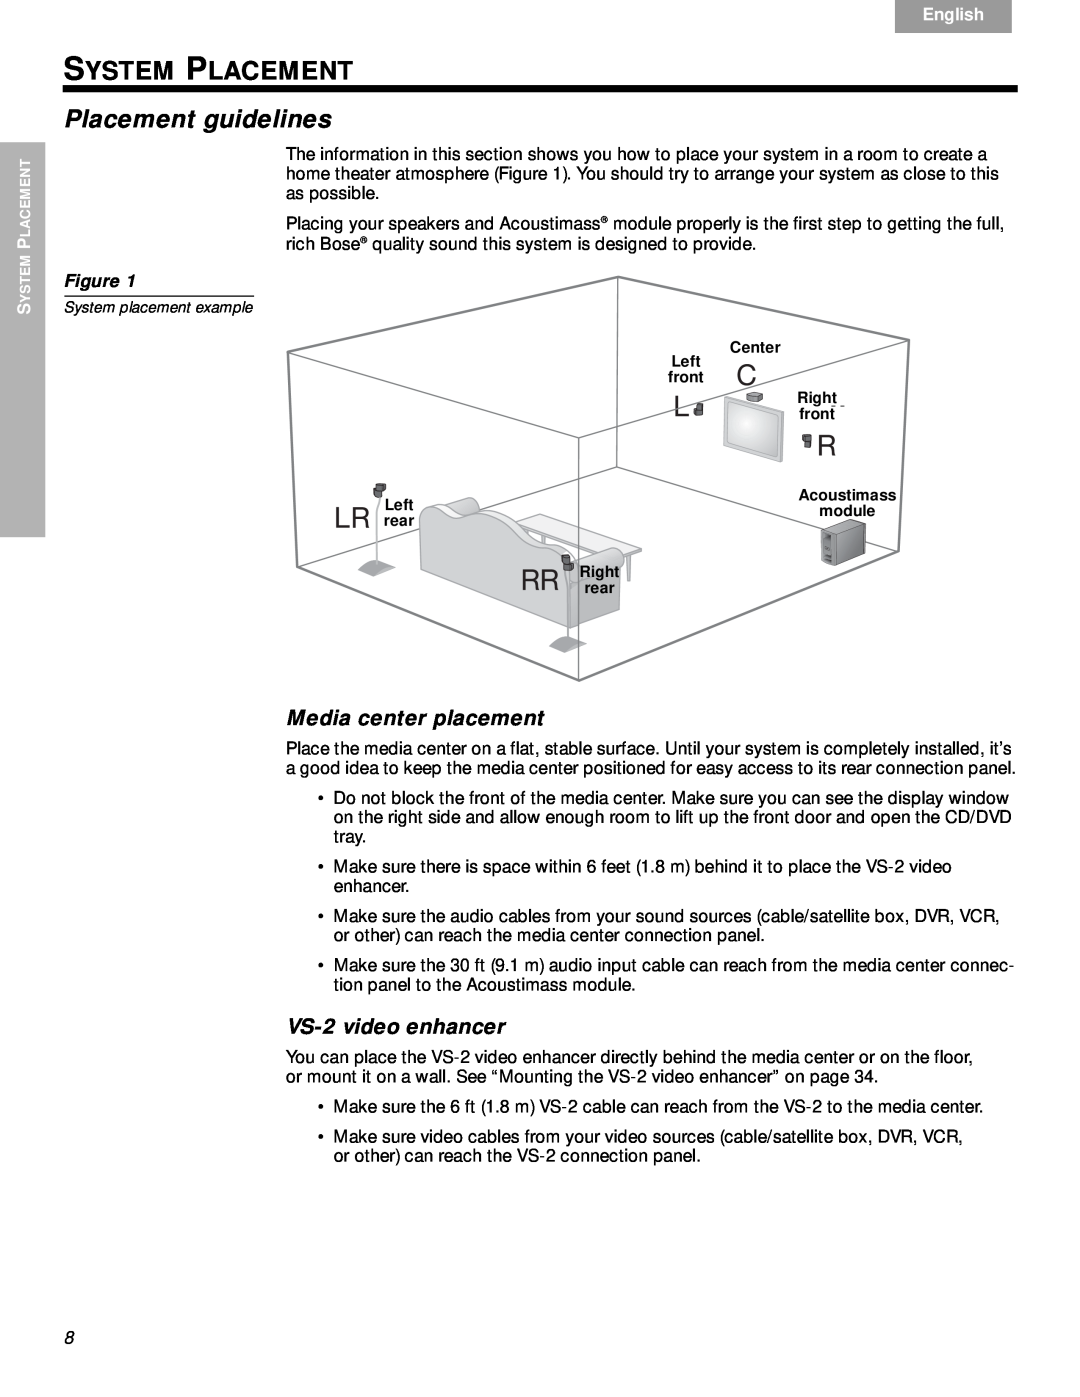 Bose System Placement, Placement guidelines, Media center placement, VS-2video enhancer, Figure, Nederlands, Svenska 